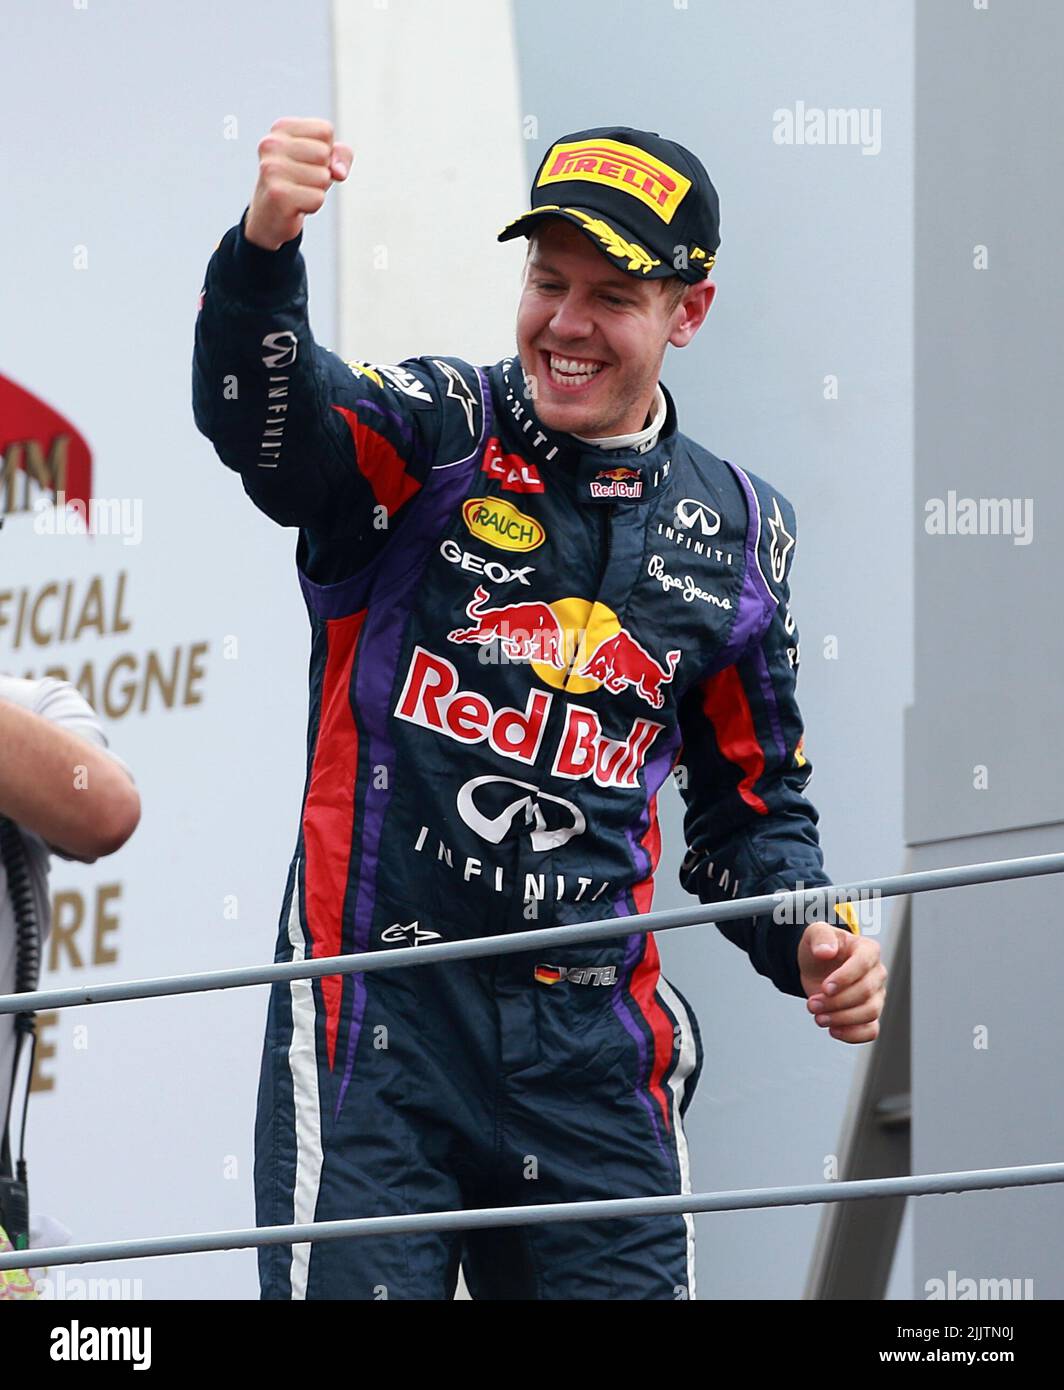 Photo du dossier datée du 08-09-2013 de Sebastian Vettel de Red Bull Racing après le Grand Prix d'Italie. Sebastian Vettel, quatre fois champion du monde, a annoncé qu'il quittera la Formule 1 à la fin de la saison. Date de publication : jeudi 28 juillet 2022. Banque D'Images